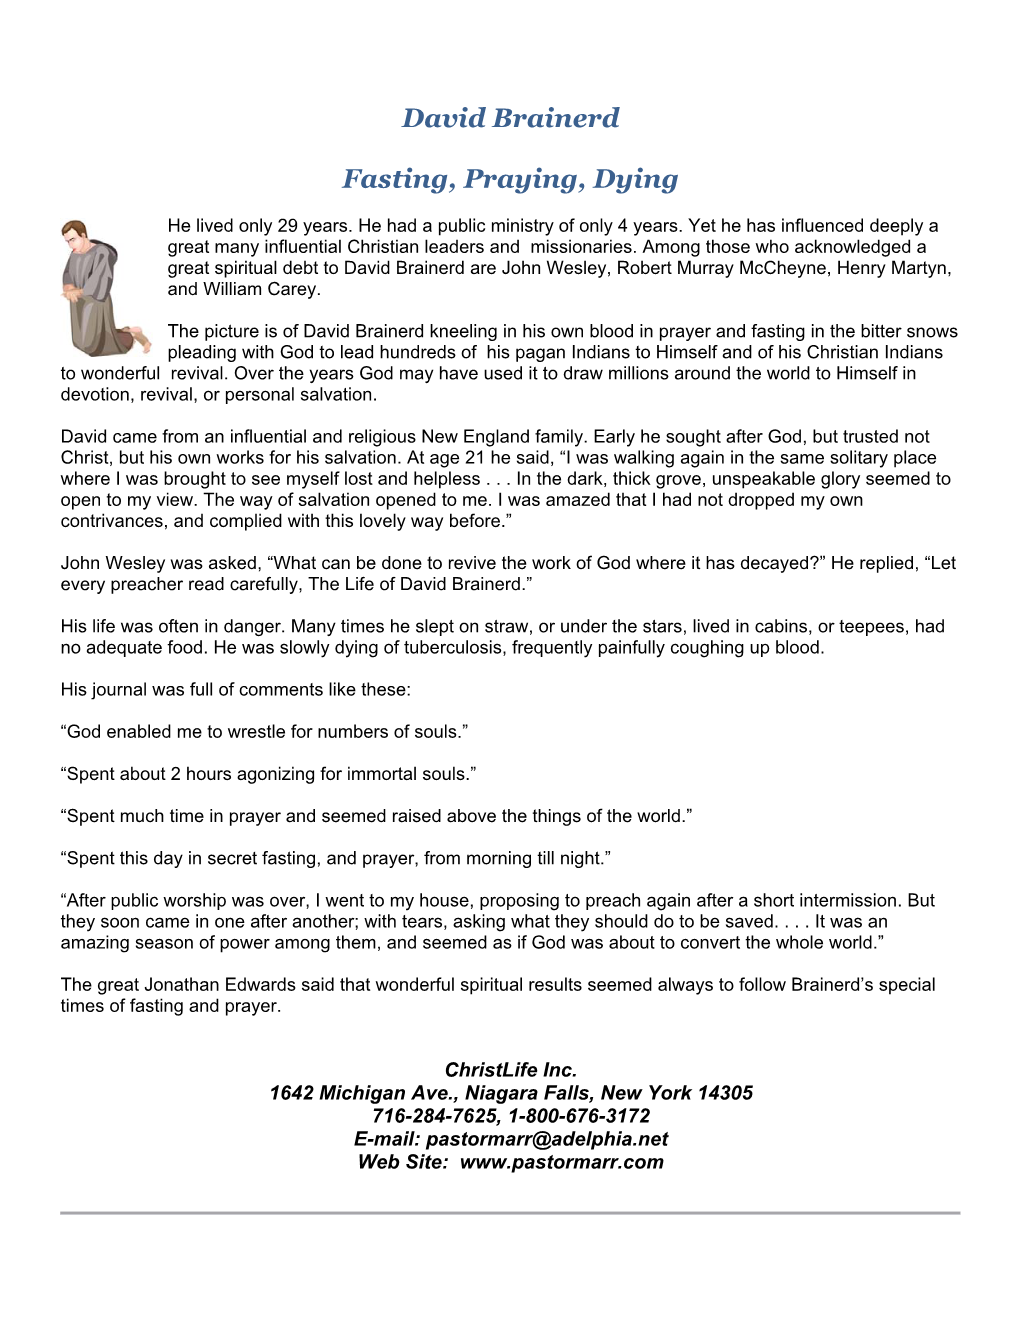 David Brainerd Fasting, Praying, Dying